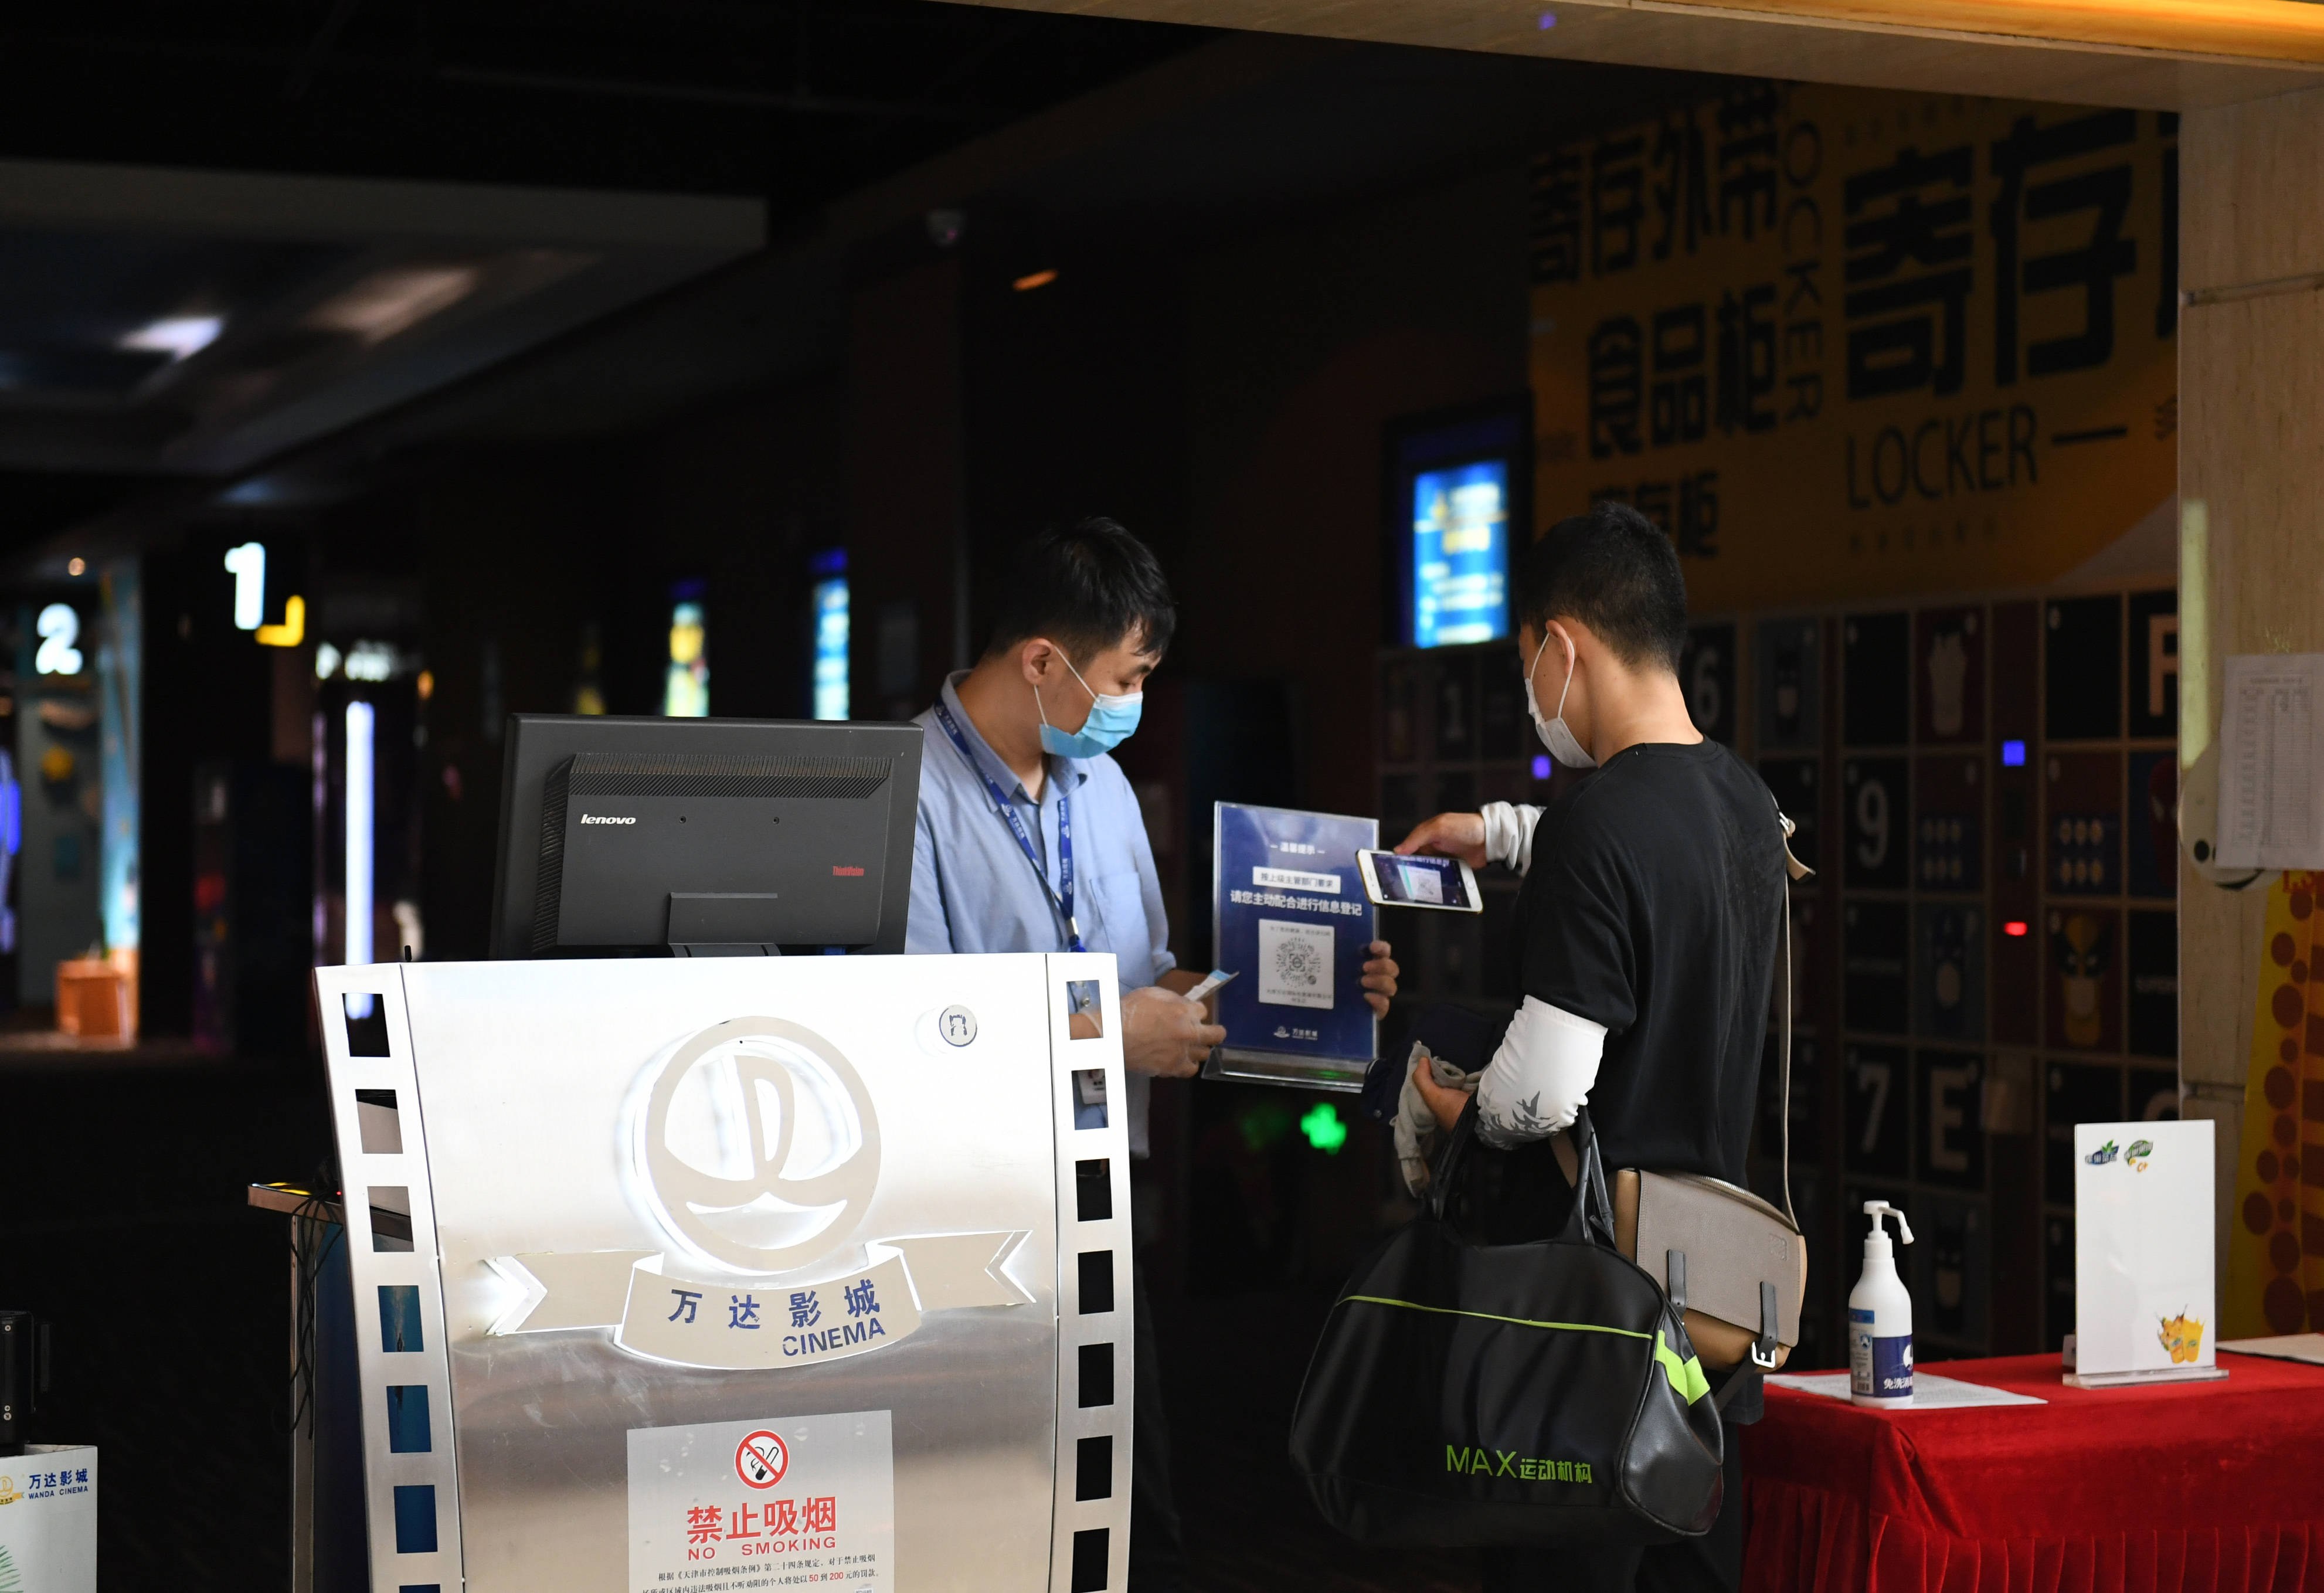 7月20日,观众在天津市一家电影院检票口扫码登记个人信息